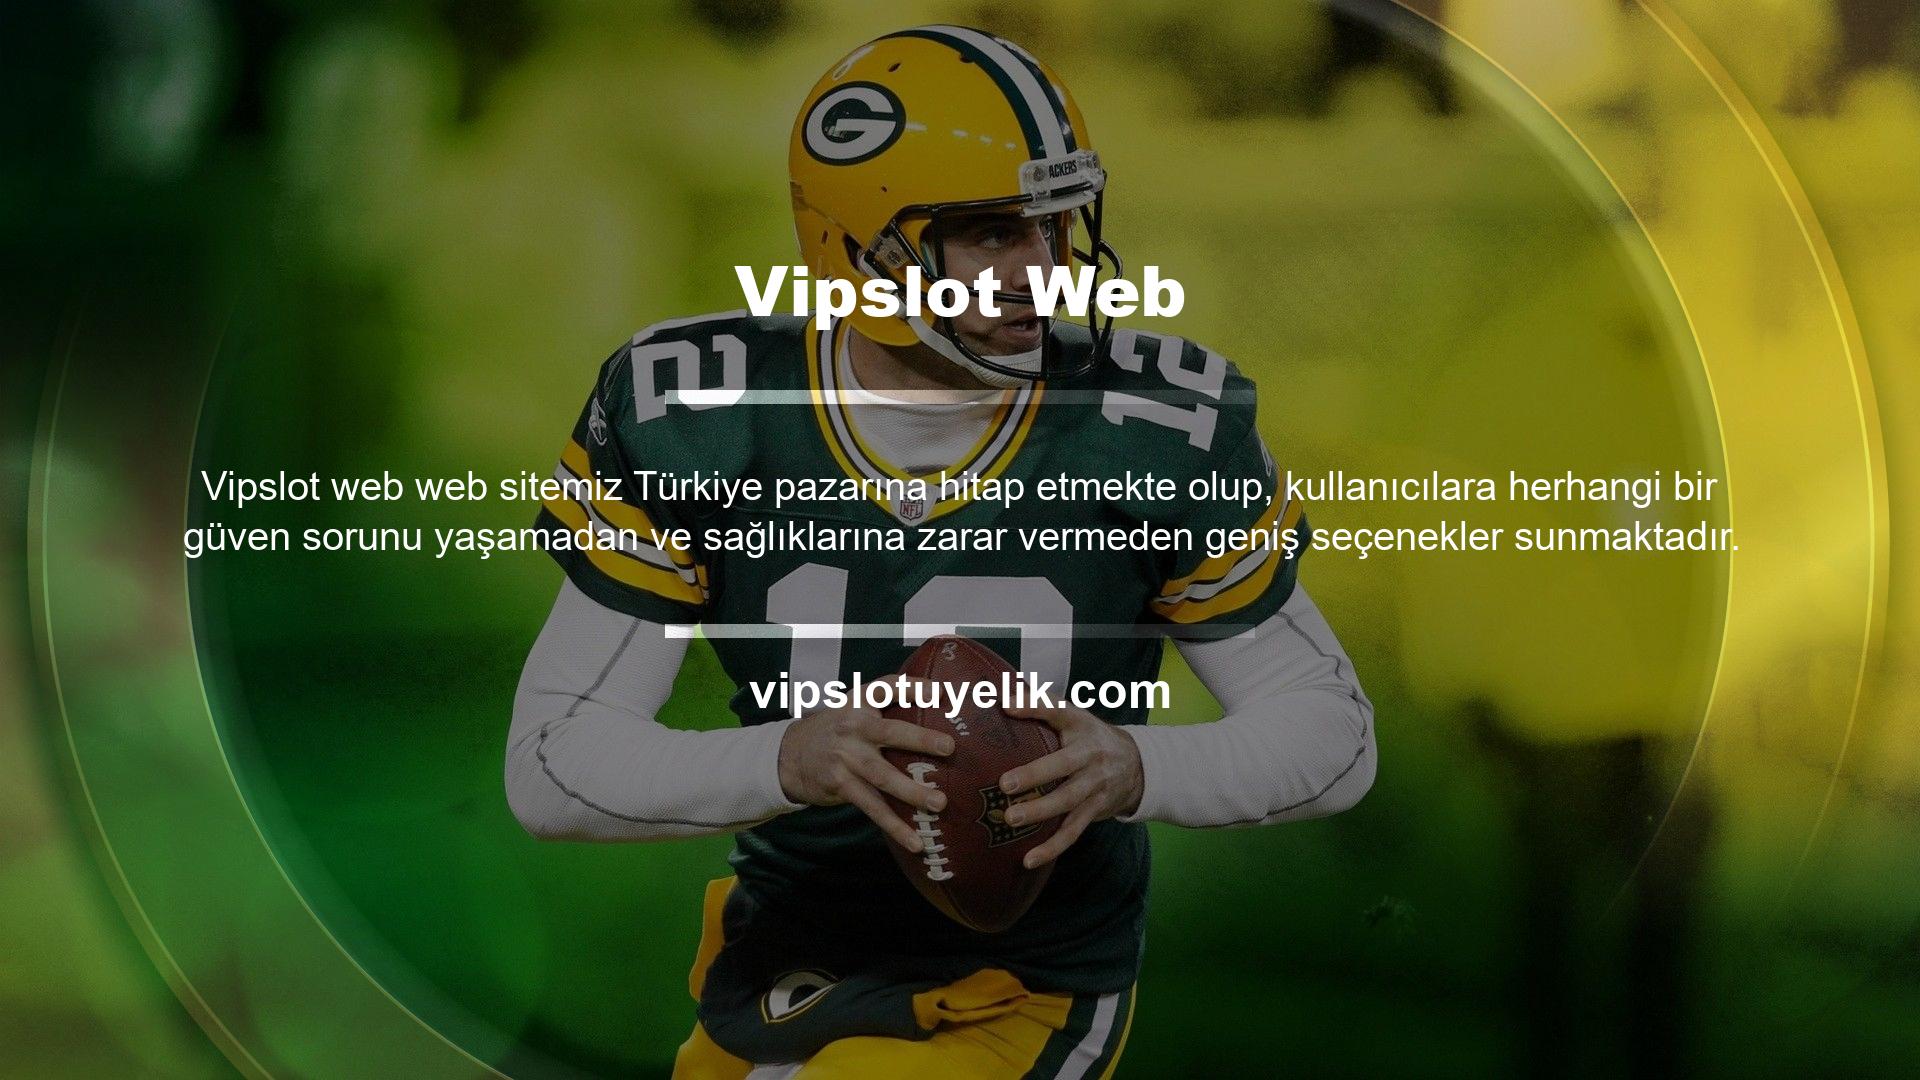 Vipslot her ne kadar Türk gibi görünse de bu markayı tercih etmek için şüphesiz iyi nedenler var